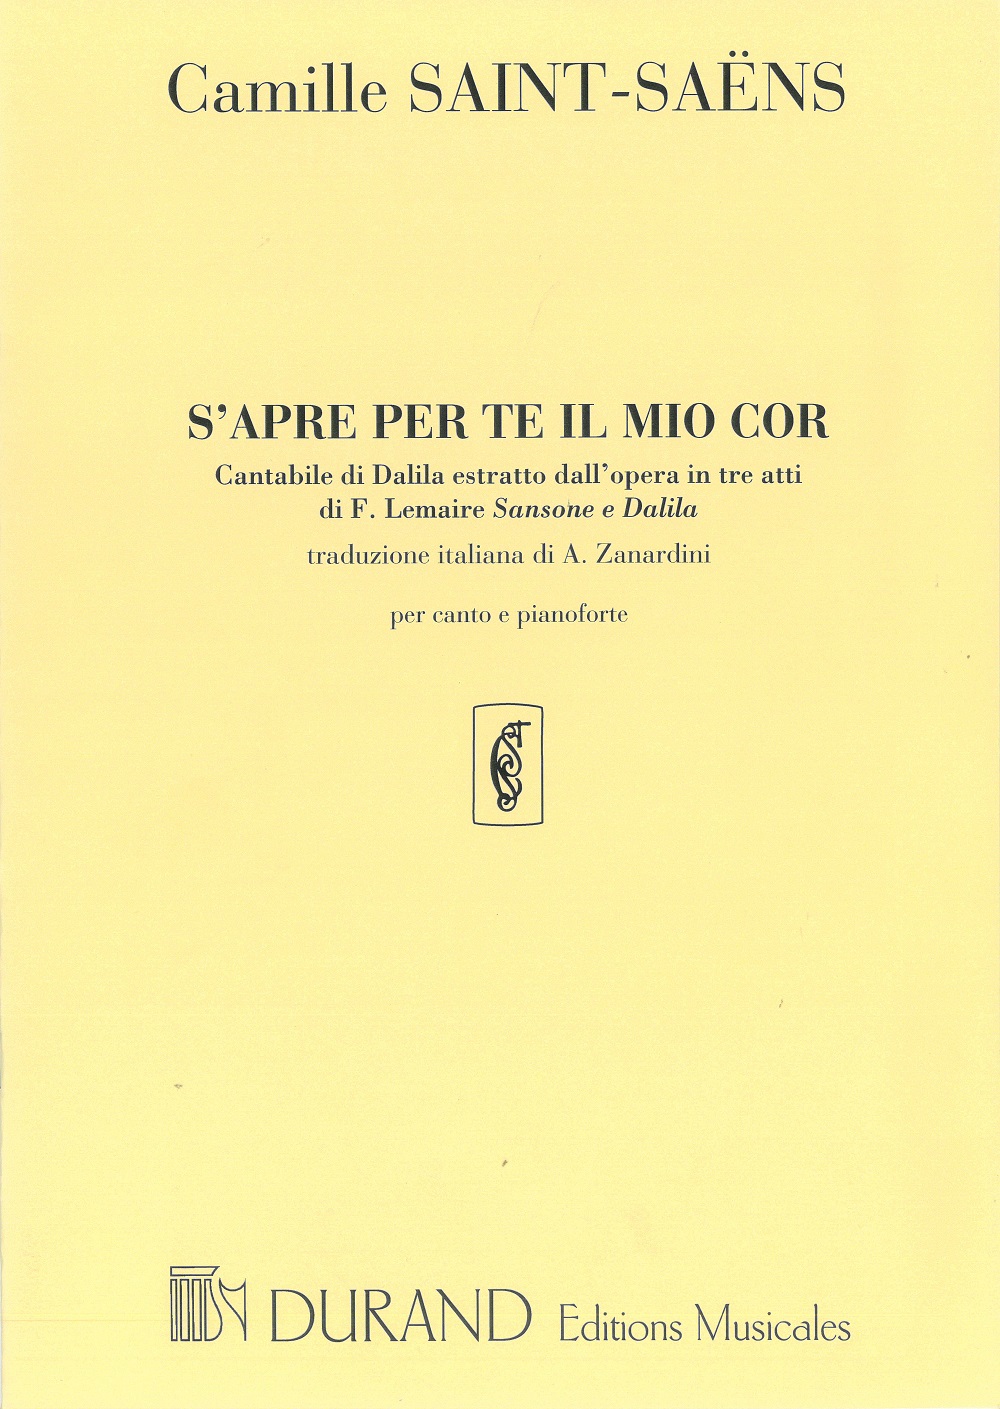 Camille Saint-Saëns: S'Apre per te il moi cor - Cantabile di Dalida: Vocal and